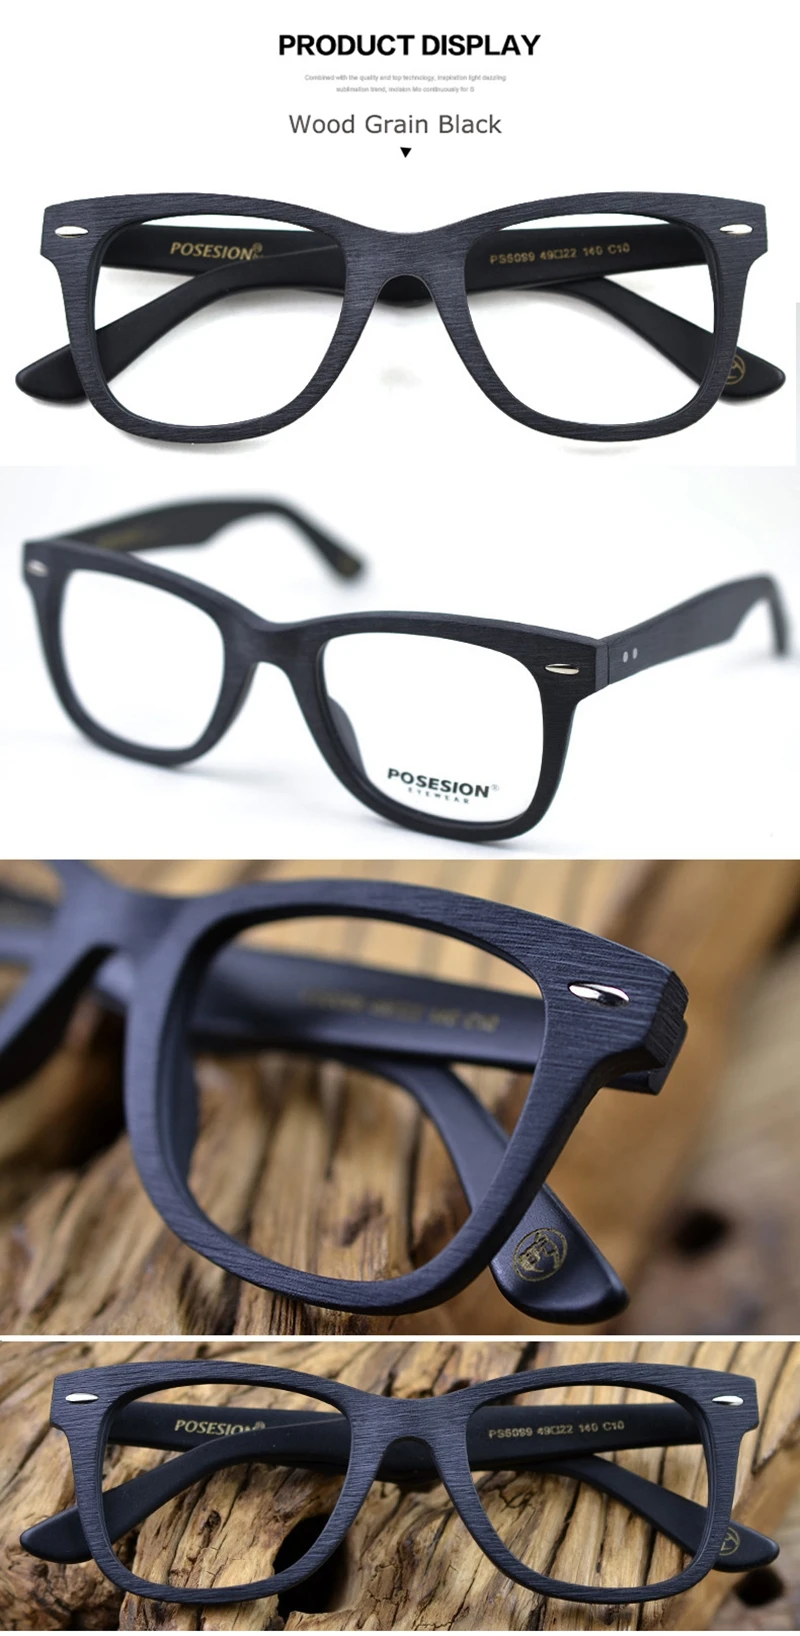 POSESION, оптические очки, оправа для мужчин и женщин, Ретро стиль, компьютерные очки для глаз, оправа для очков, прозрачные линзы, мужские женские очки PS6099